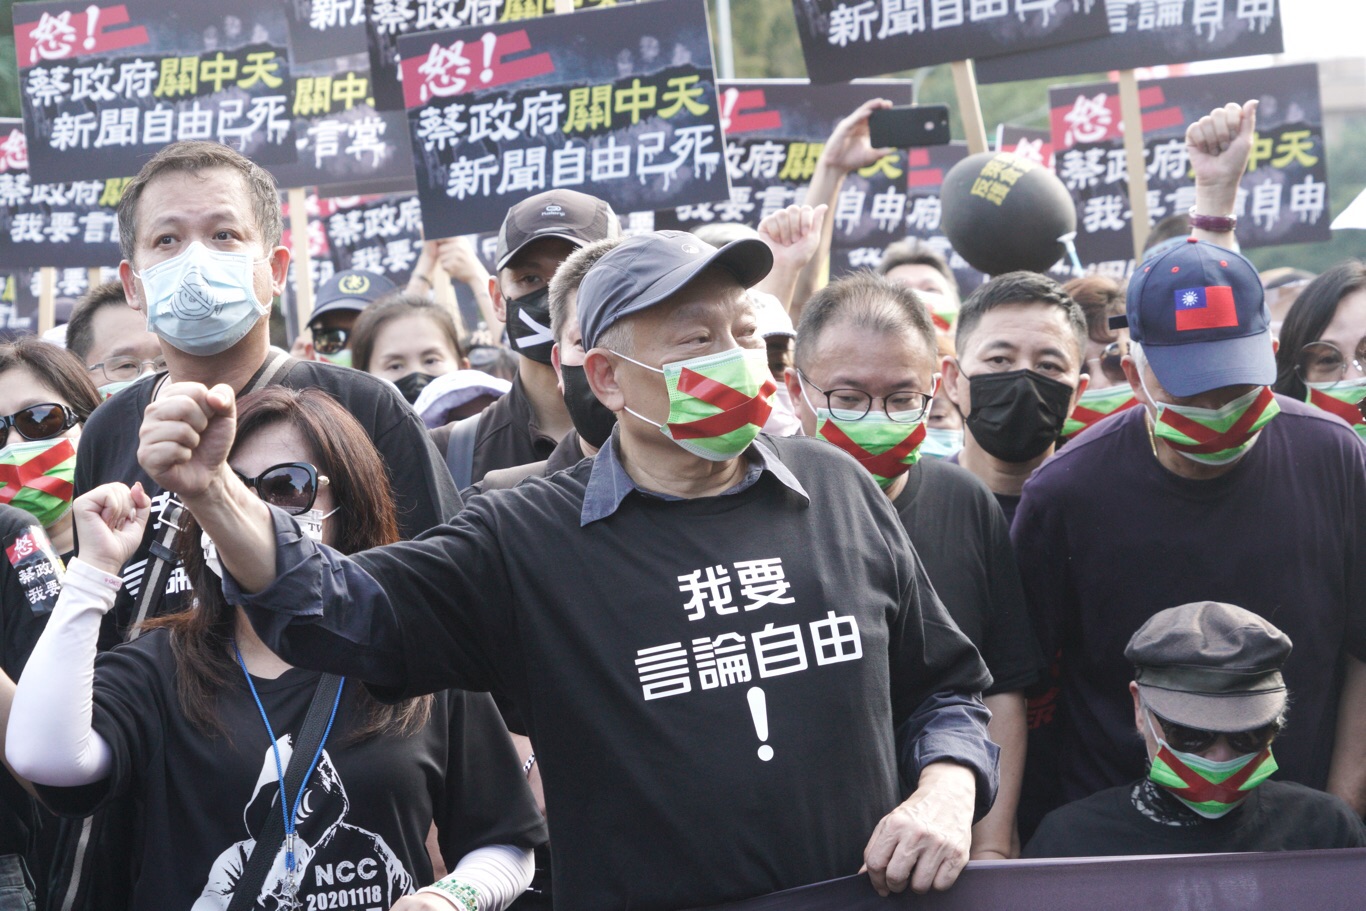 財團老闆蔡衍明走上街頭加入秋鬥 高喊「無敵鐵金剛，站在正義一方」